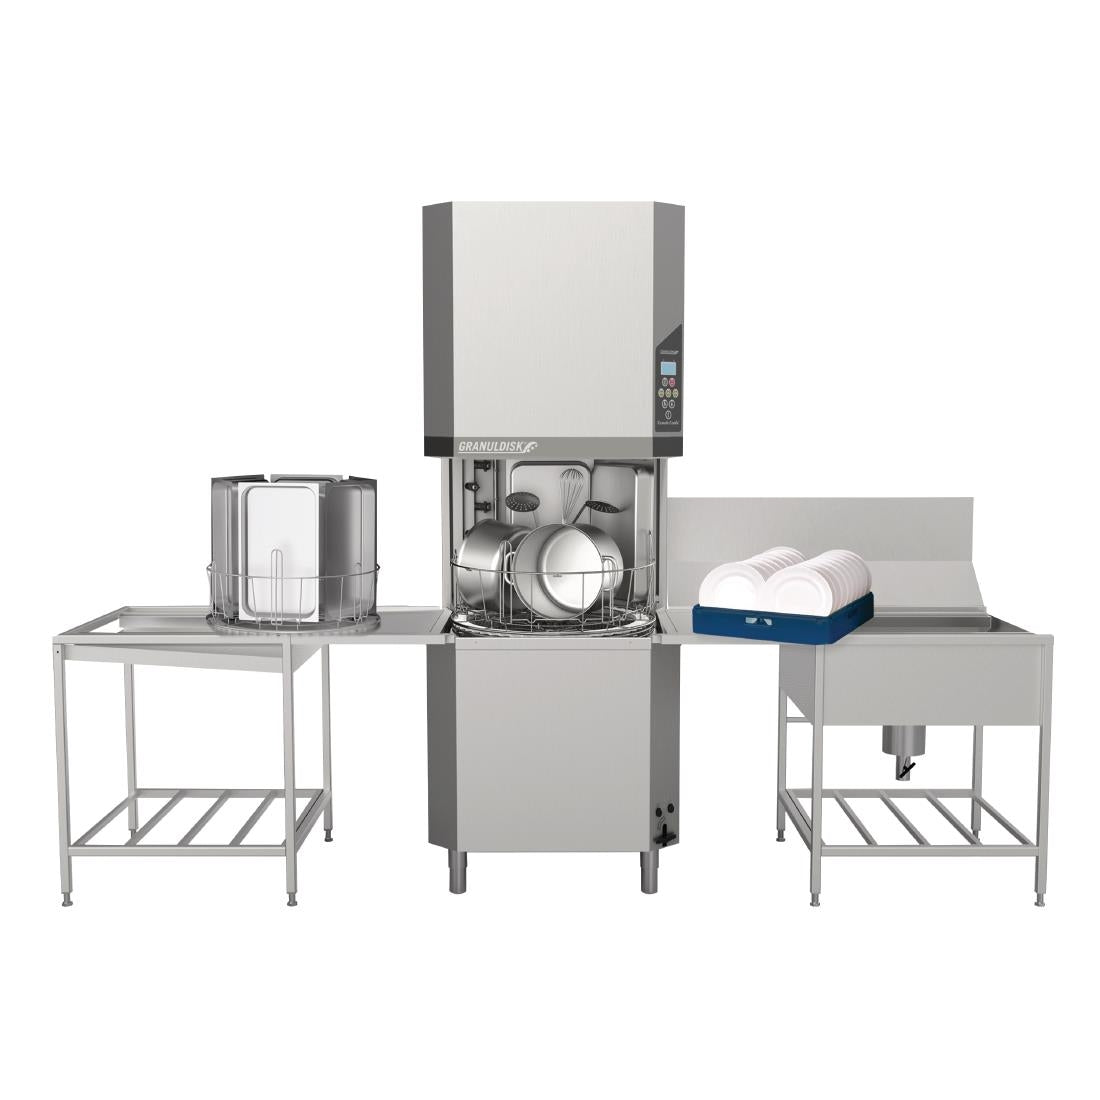 FD008 Granuldisk Granule Combi Pass Through Utensil Washer 20719 JD Catering Equipment Solutions Ltd